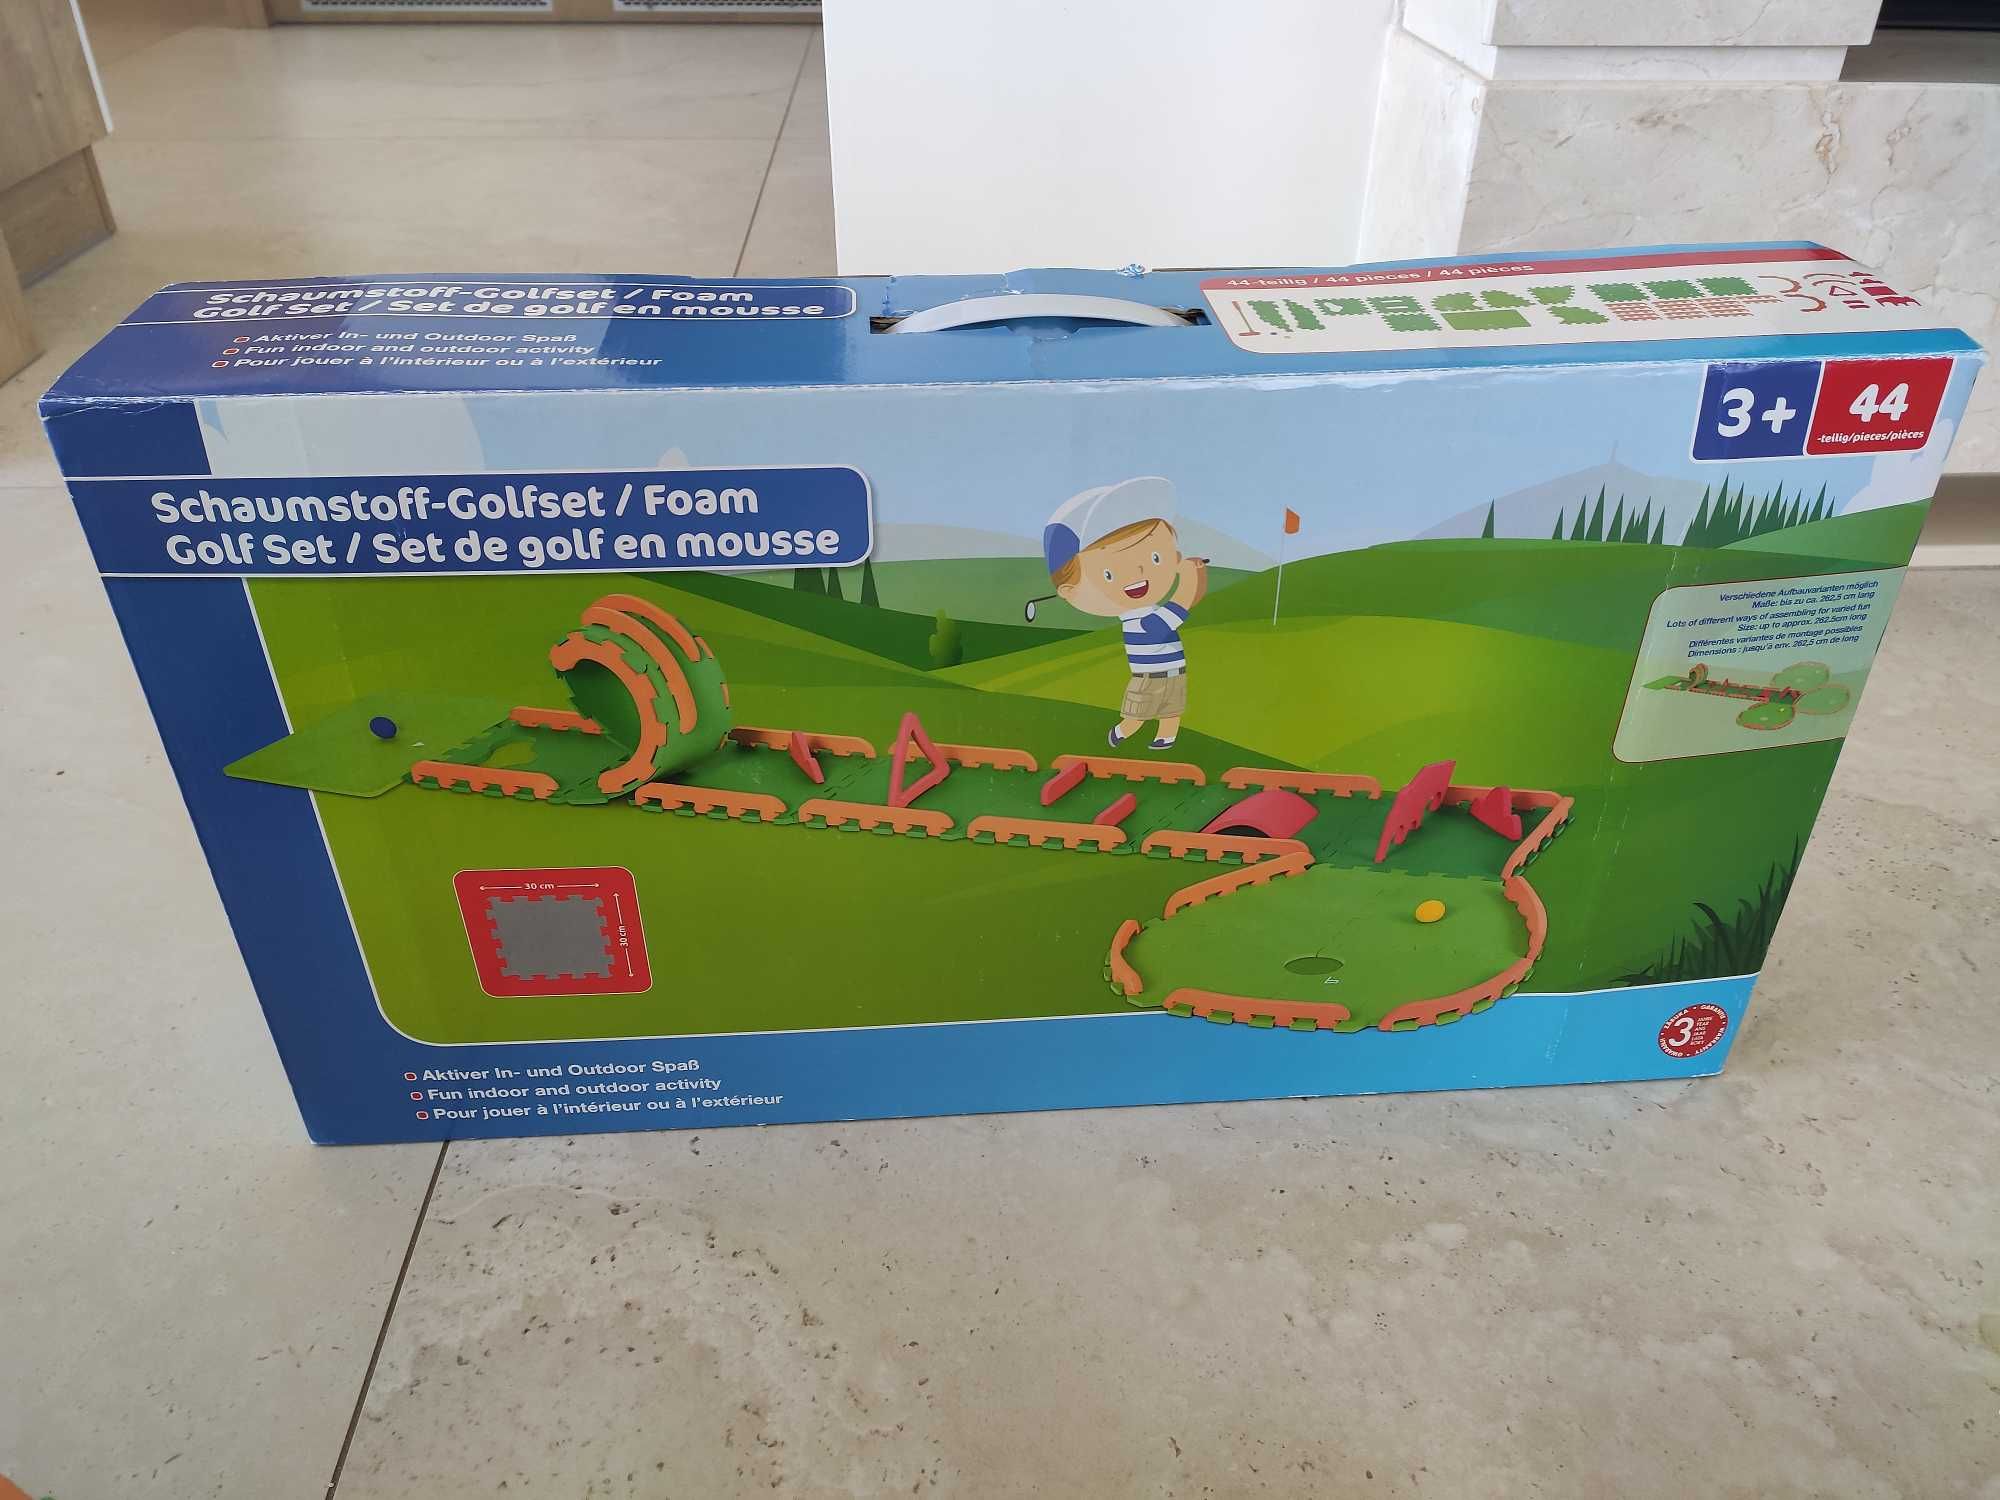 Gra dziecięca GOLF zabawka piankowa duża